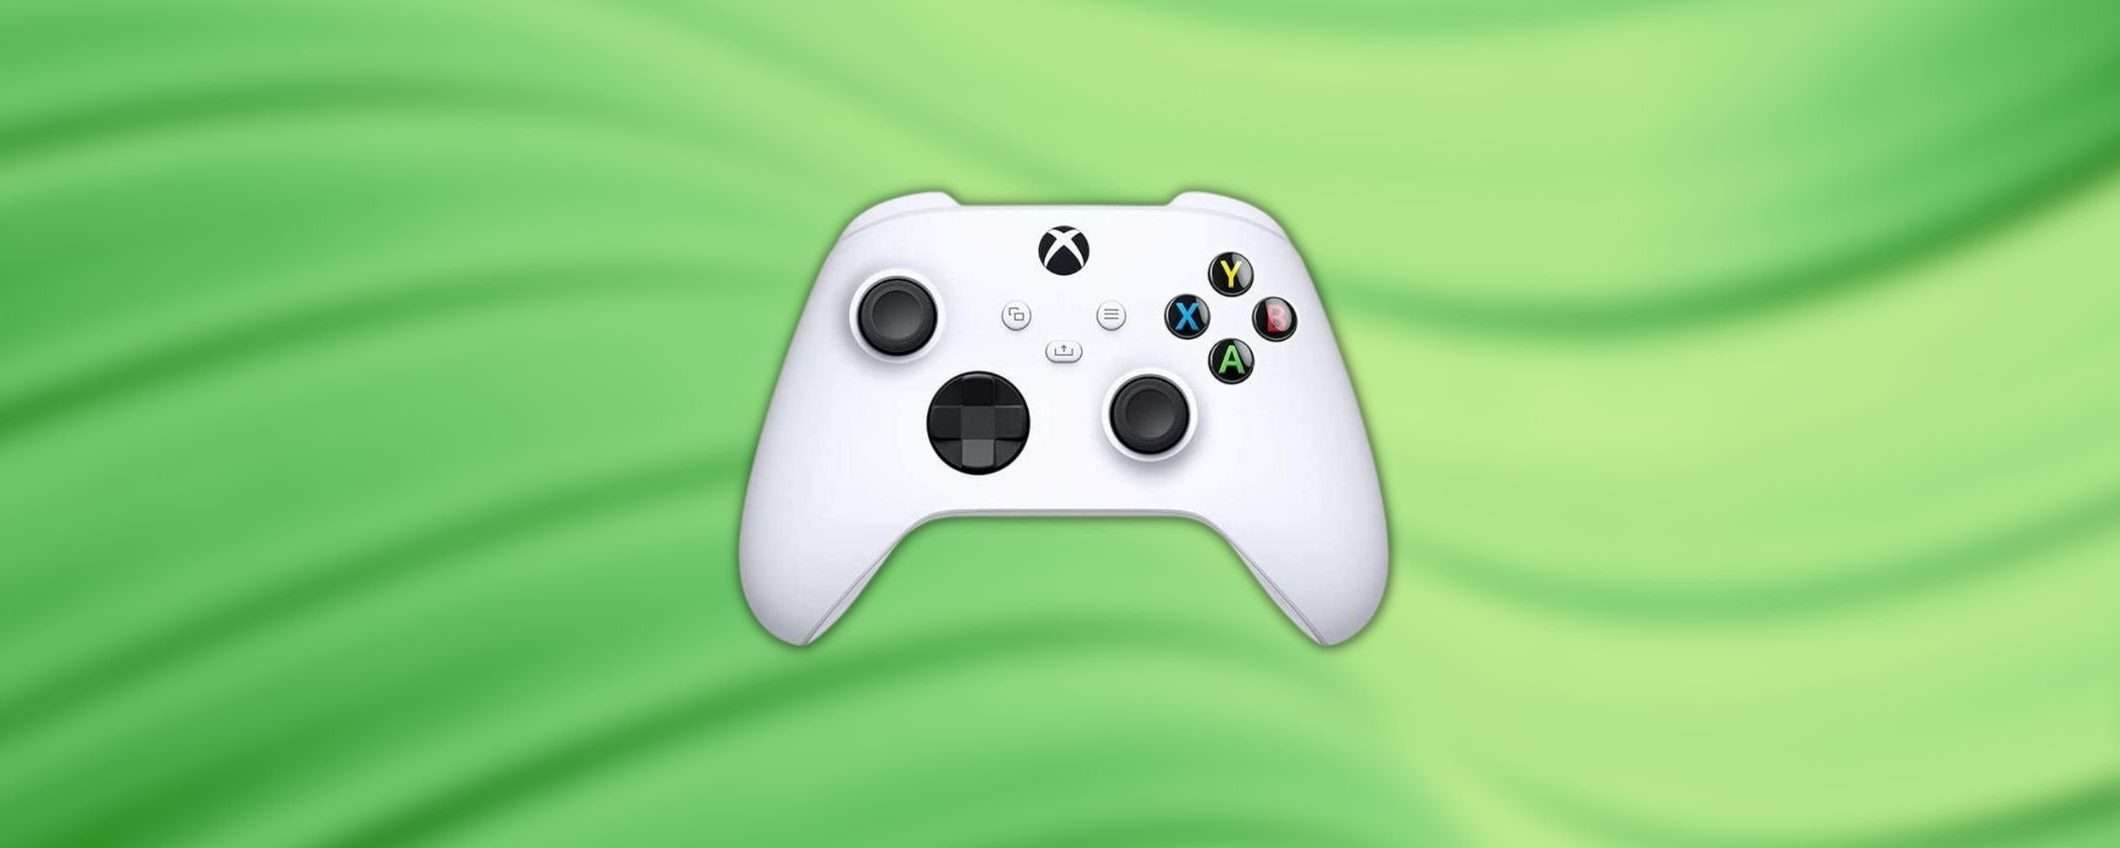 Controller Wireless Xbox Bianco: super sconto di Amazon e mega risparmio